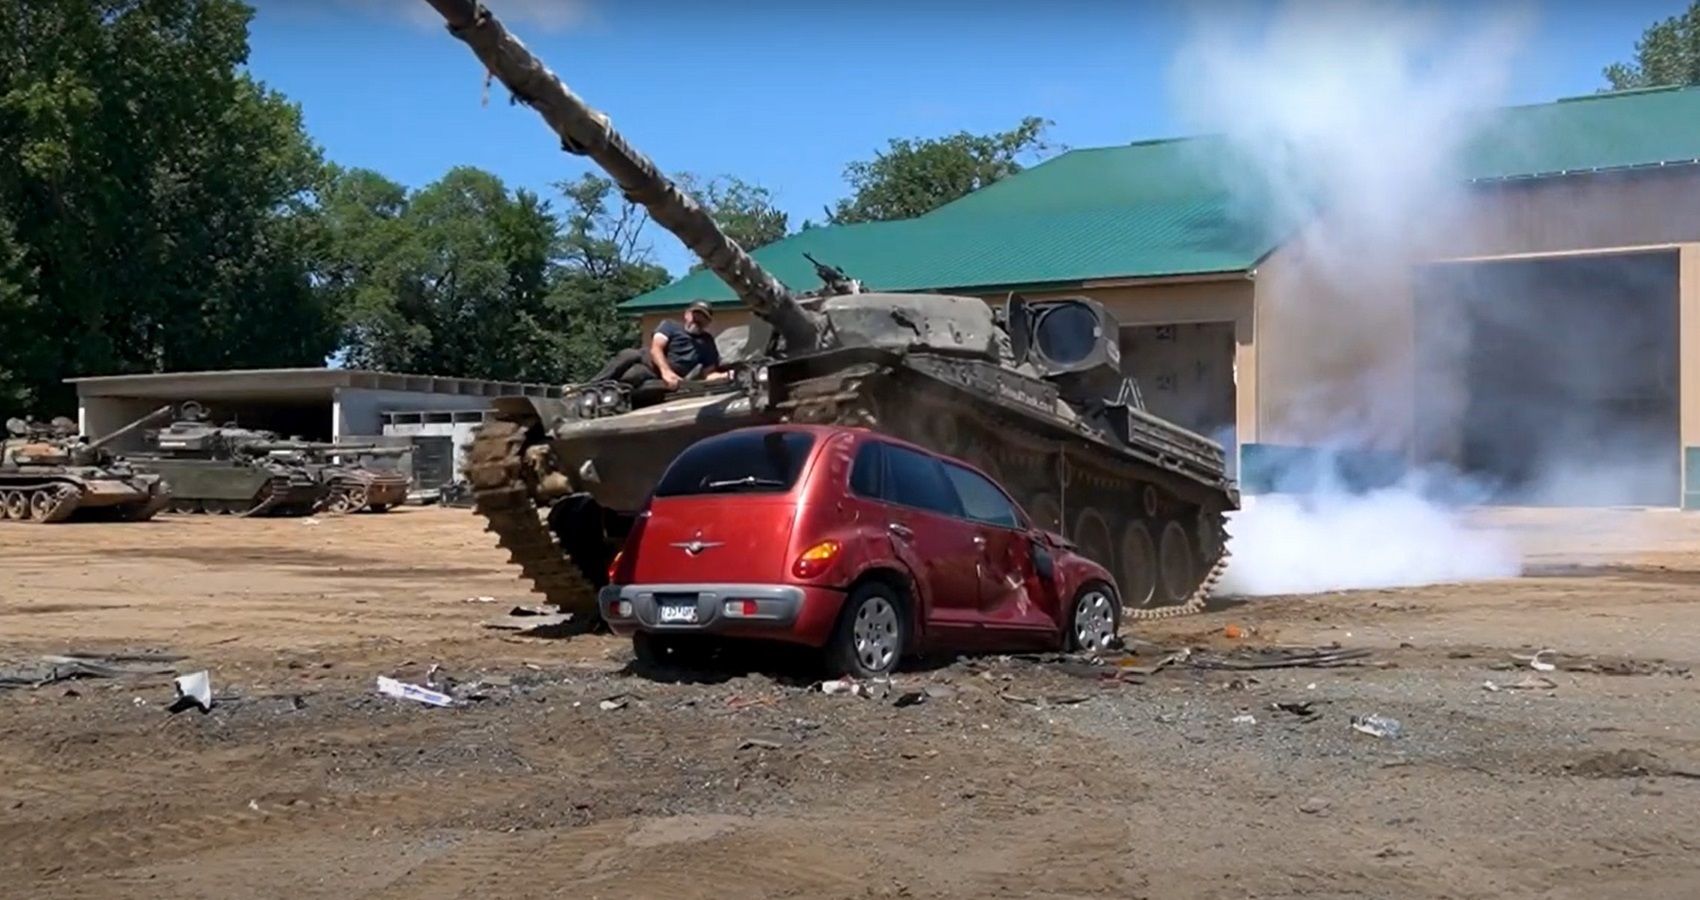 Herman Tank running over PT Cruiser, red car and tank, smoke